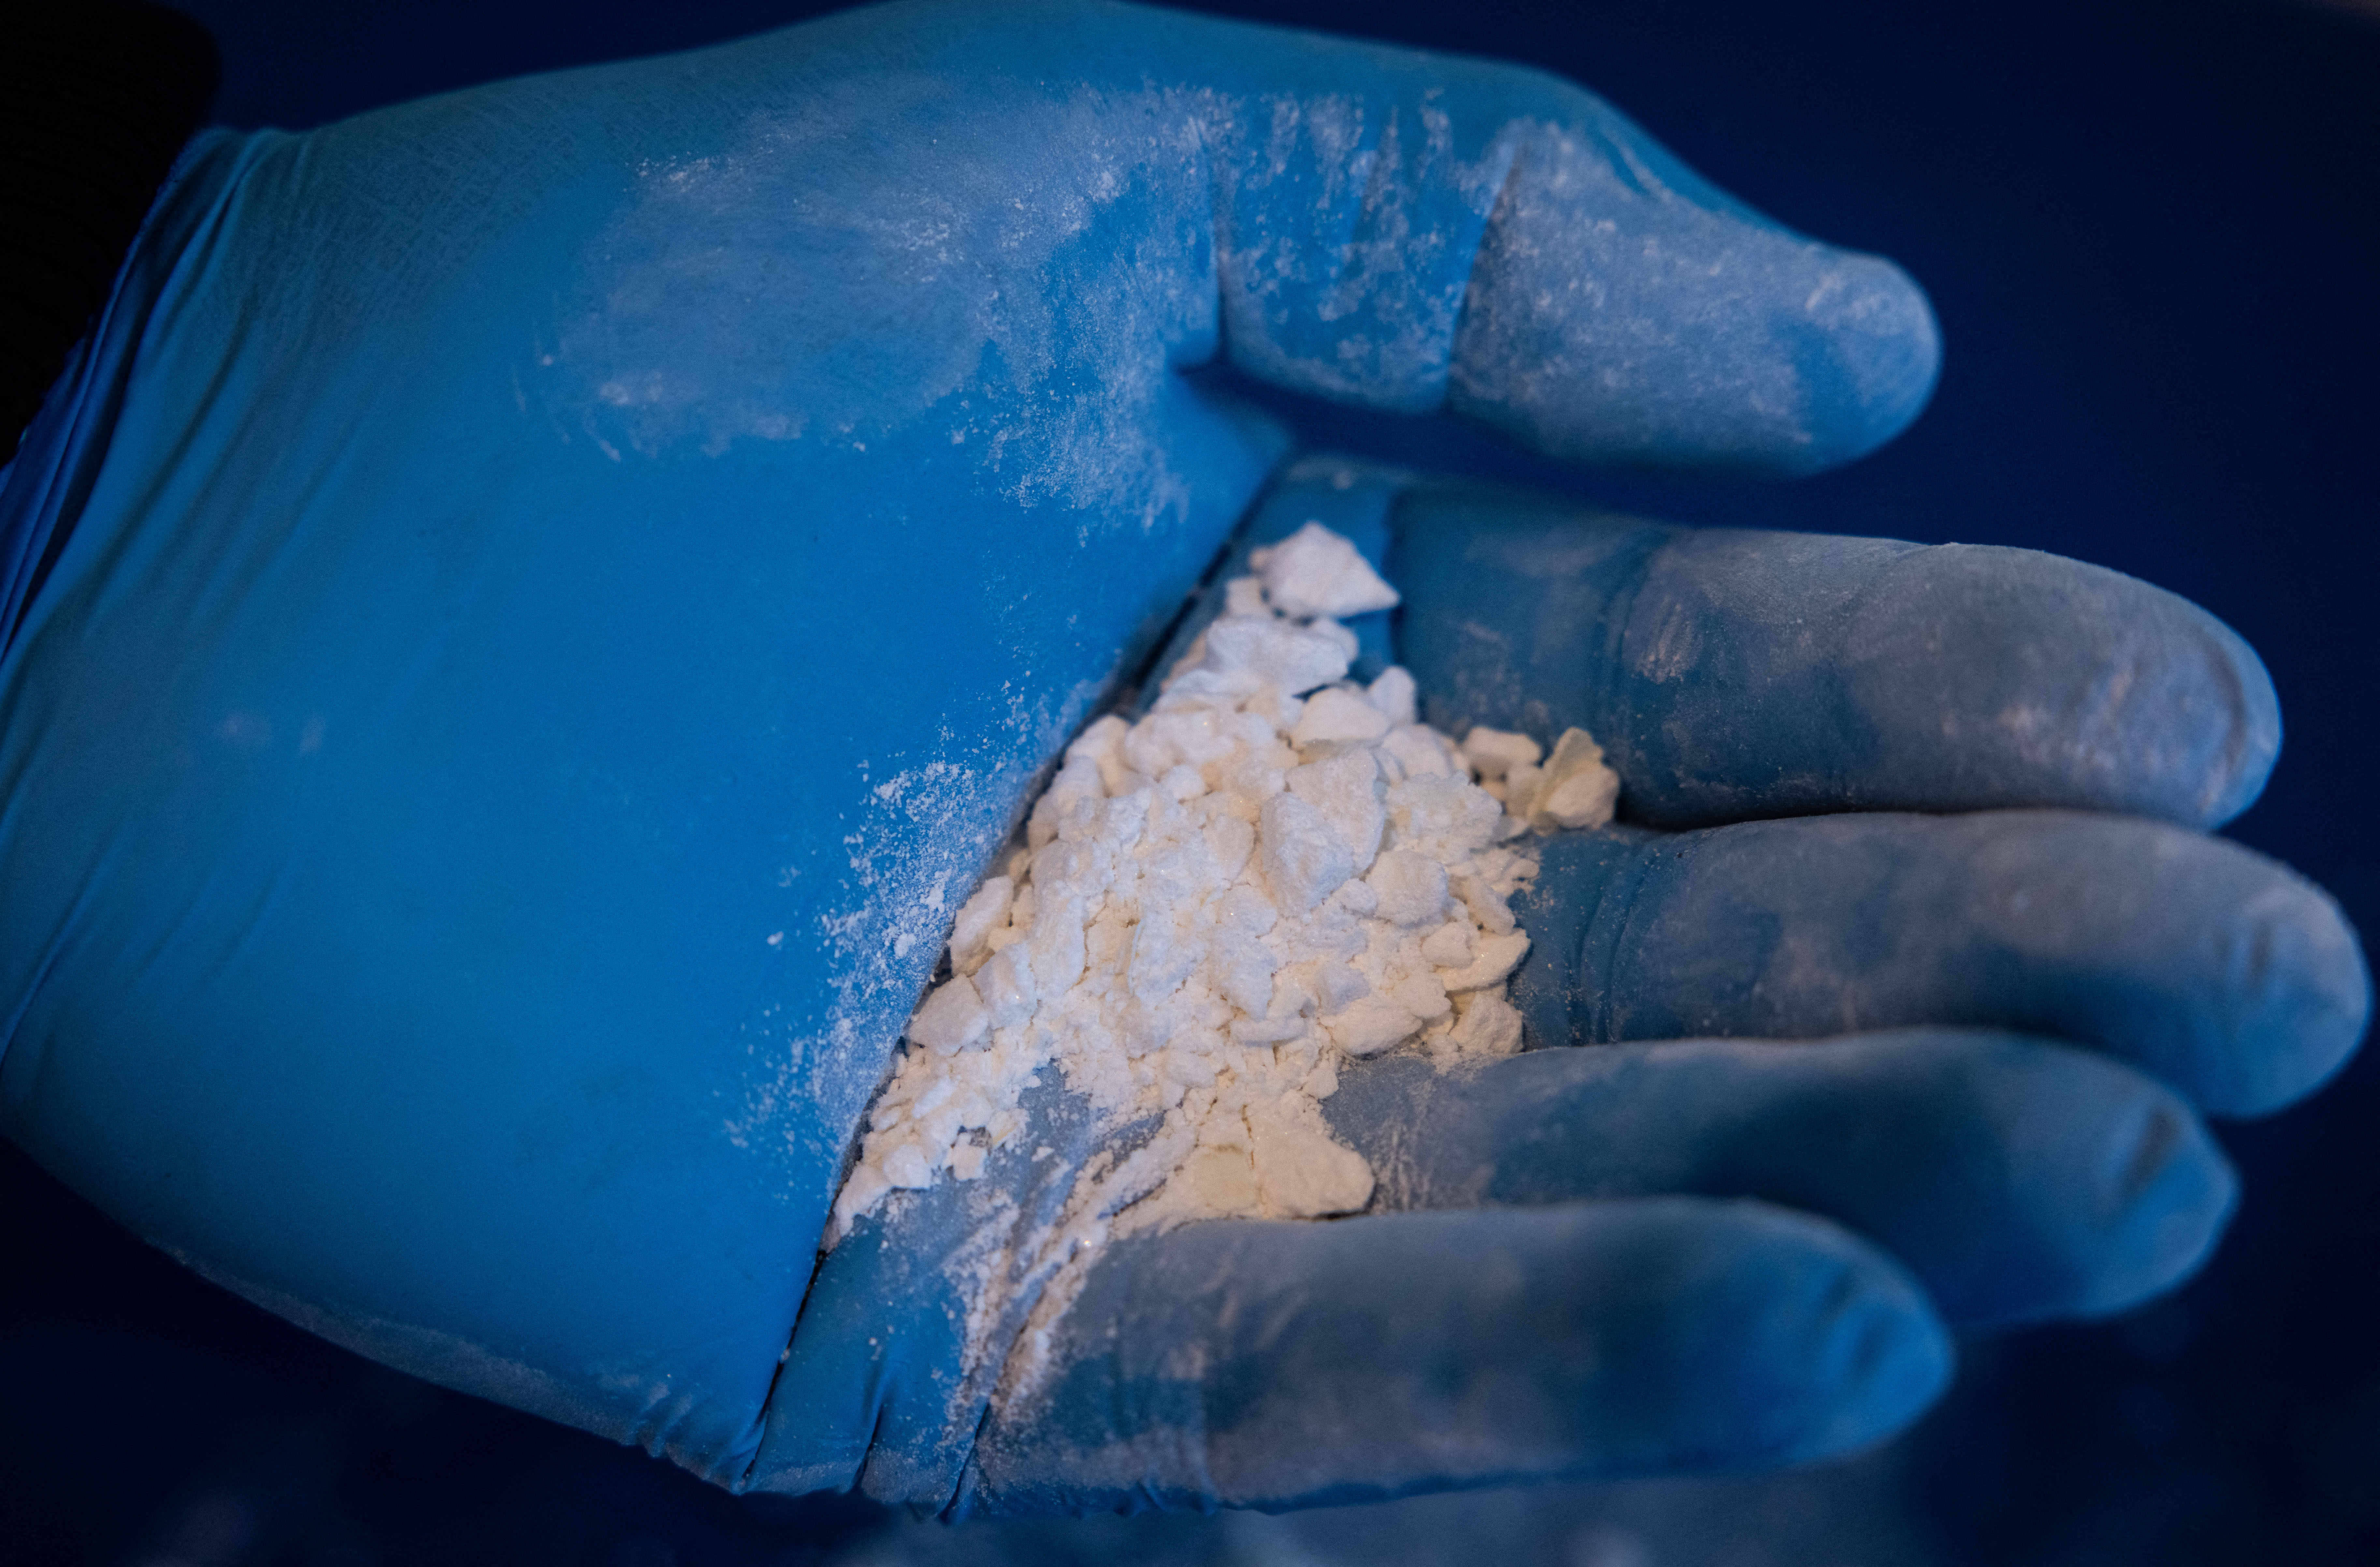 Mérgező mennyiségű kokaint és dizájnerdrogot találtak a rendőri intézkedés közben meghalt férfi szervezetében